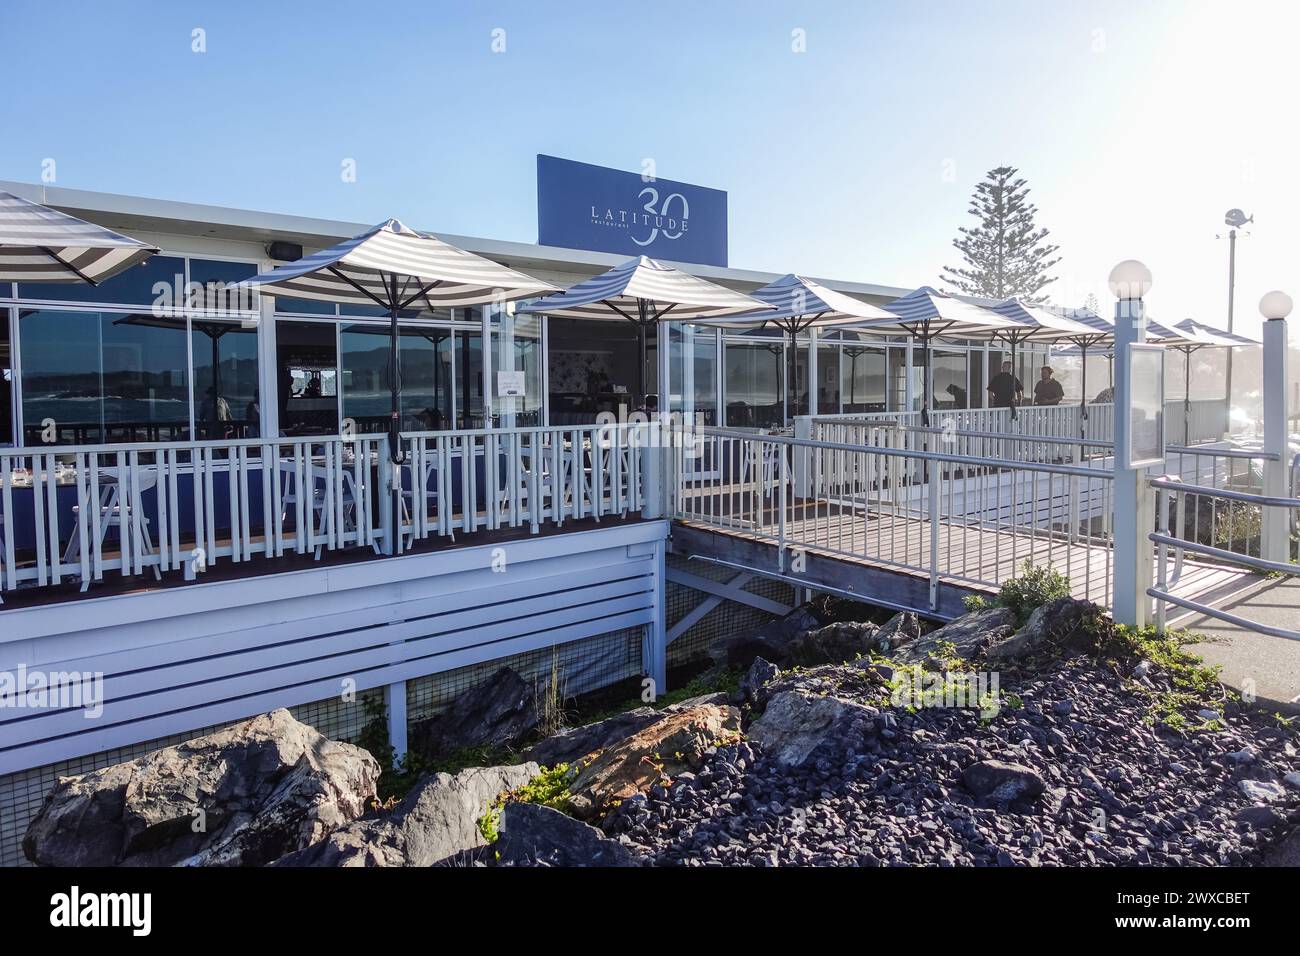 Das Latitude 30 Restaurant ist ein beliebtes Restaurant in Coffs Harbour, Australien, das für sein vielfältiges Menü mit frischen Meeresfrüchten und gegrilltem Fleisch bekannt ist Stockfoto